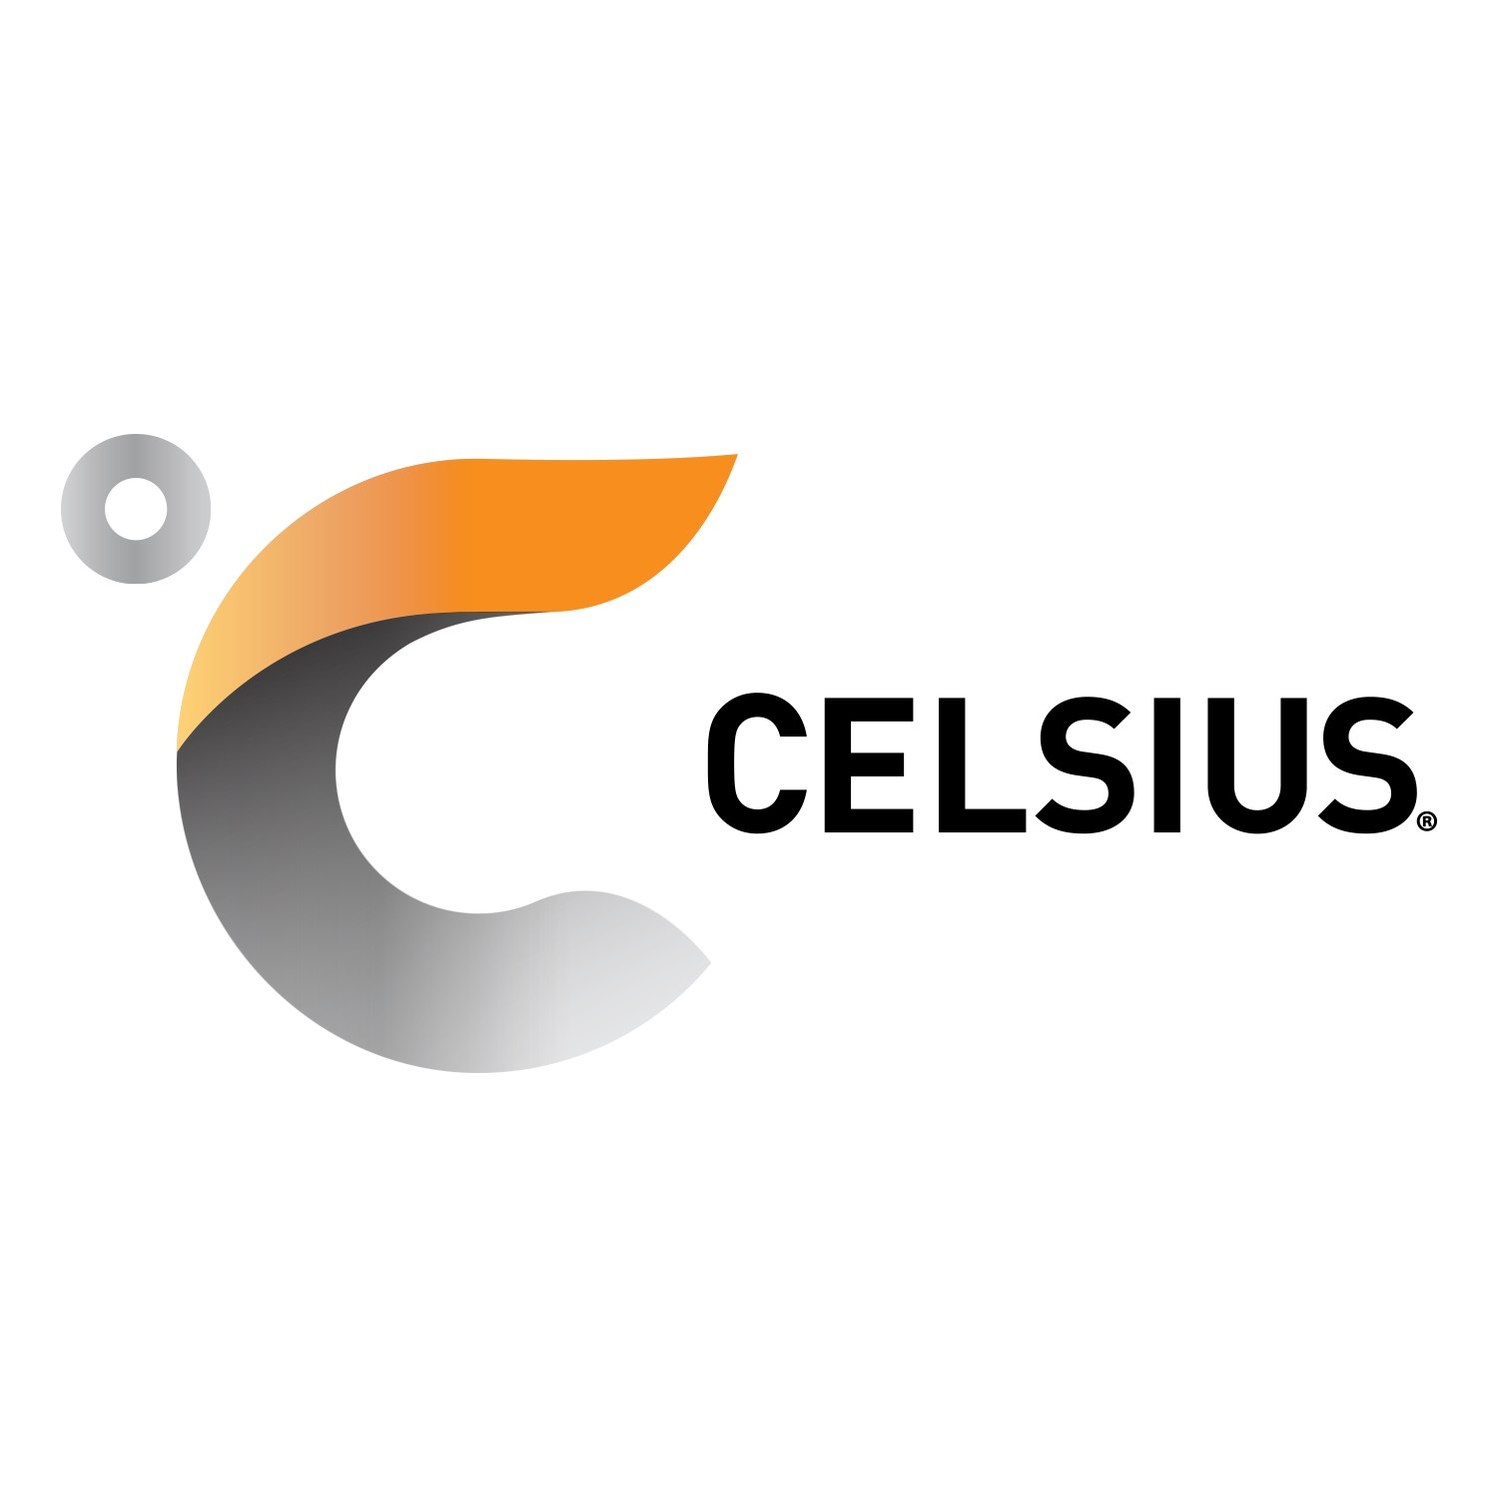 Celsius Holdings, Inc.